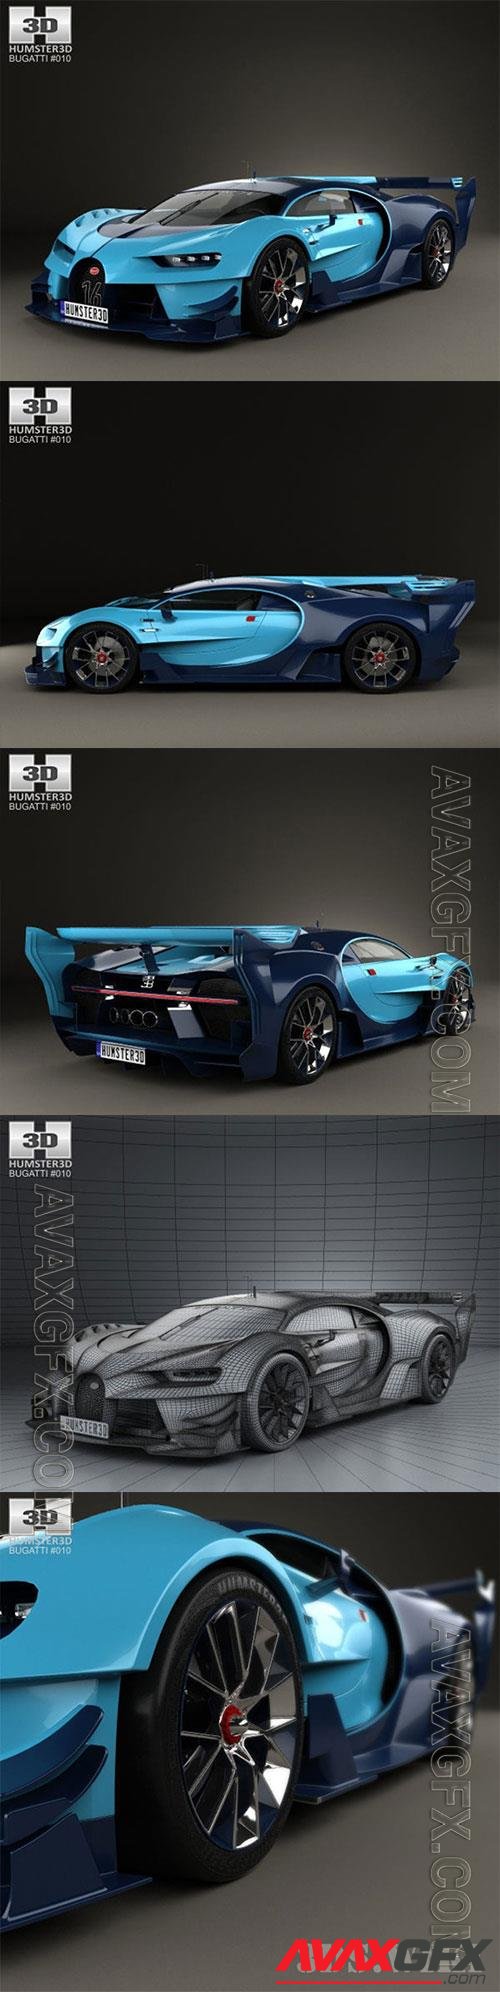 Bugatti Vision Gran Turismo 2015 3D Model